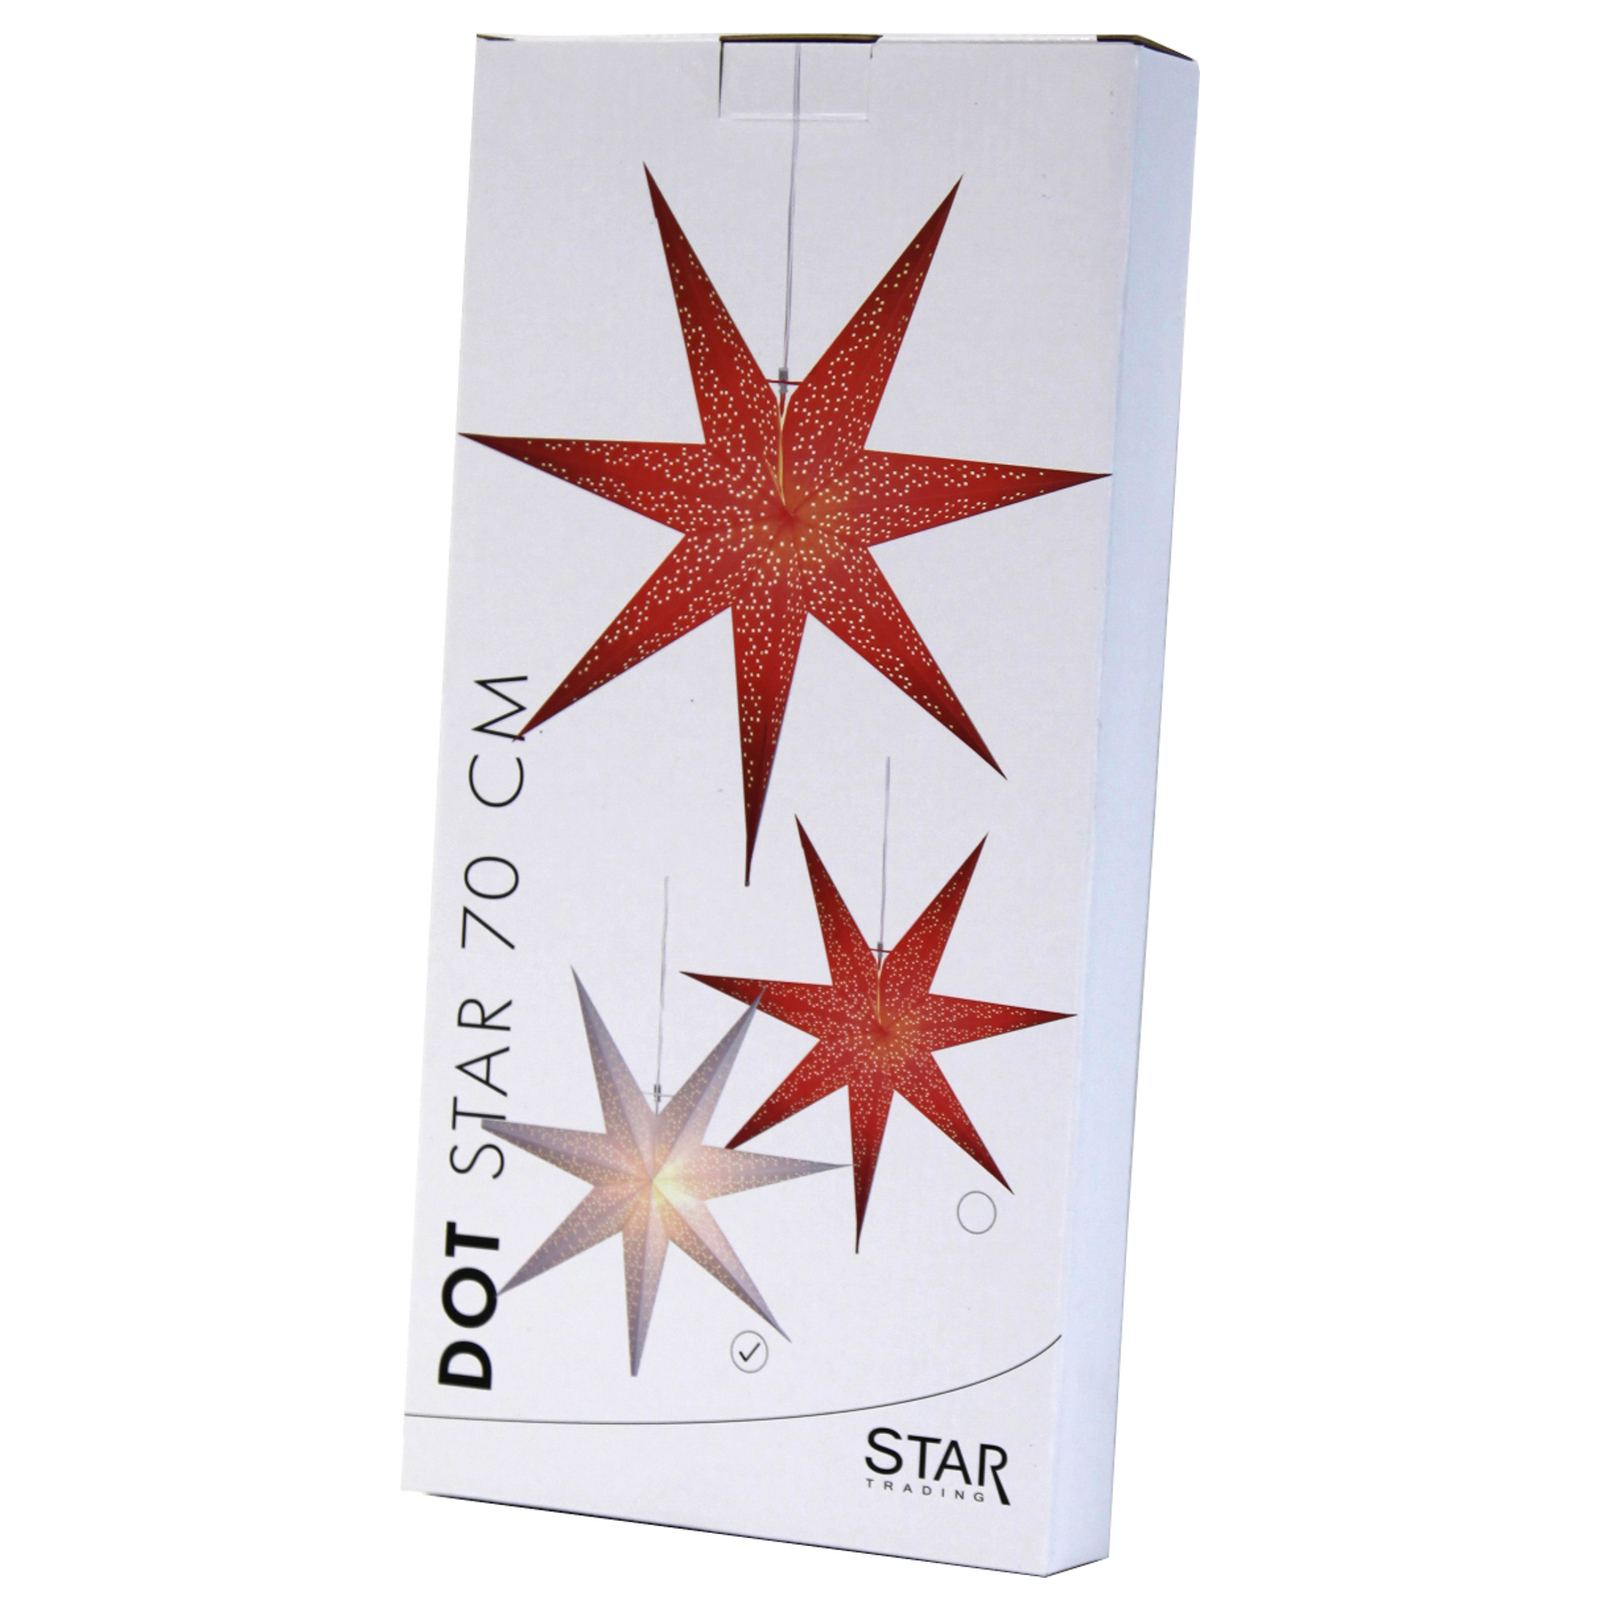 Papírová hvězda Dot s děrovaným vzorem, bílá Ø70cm